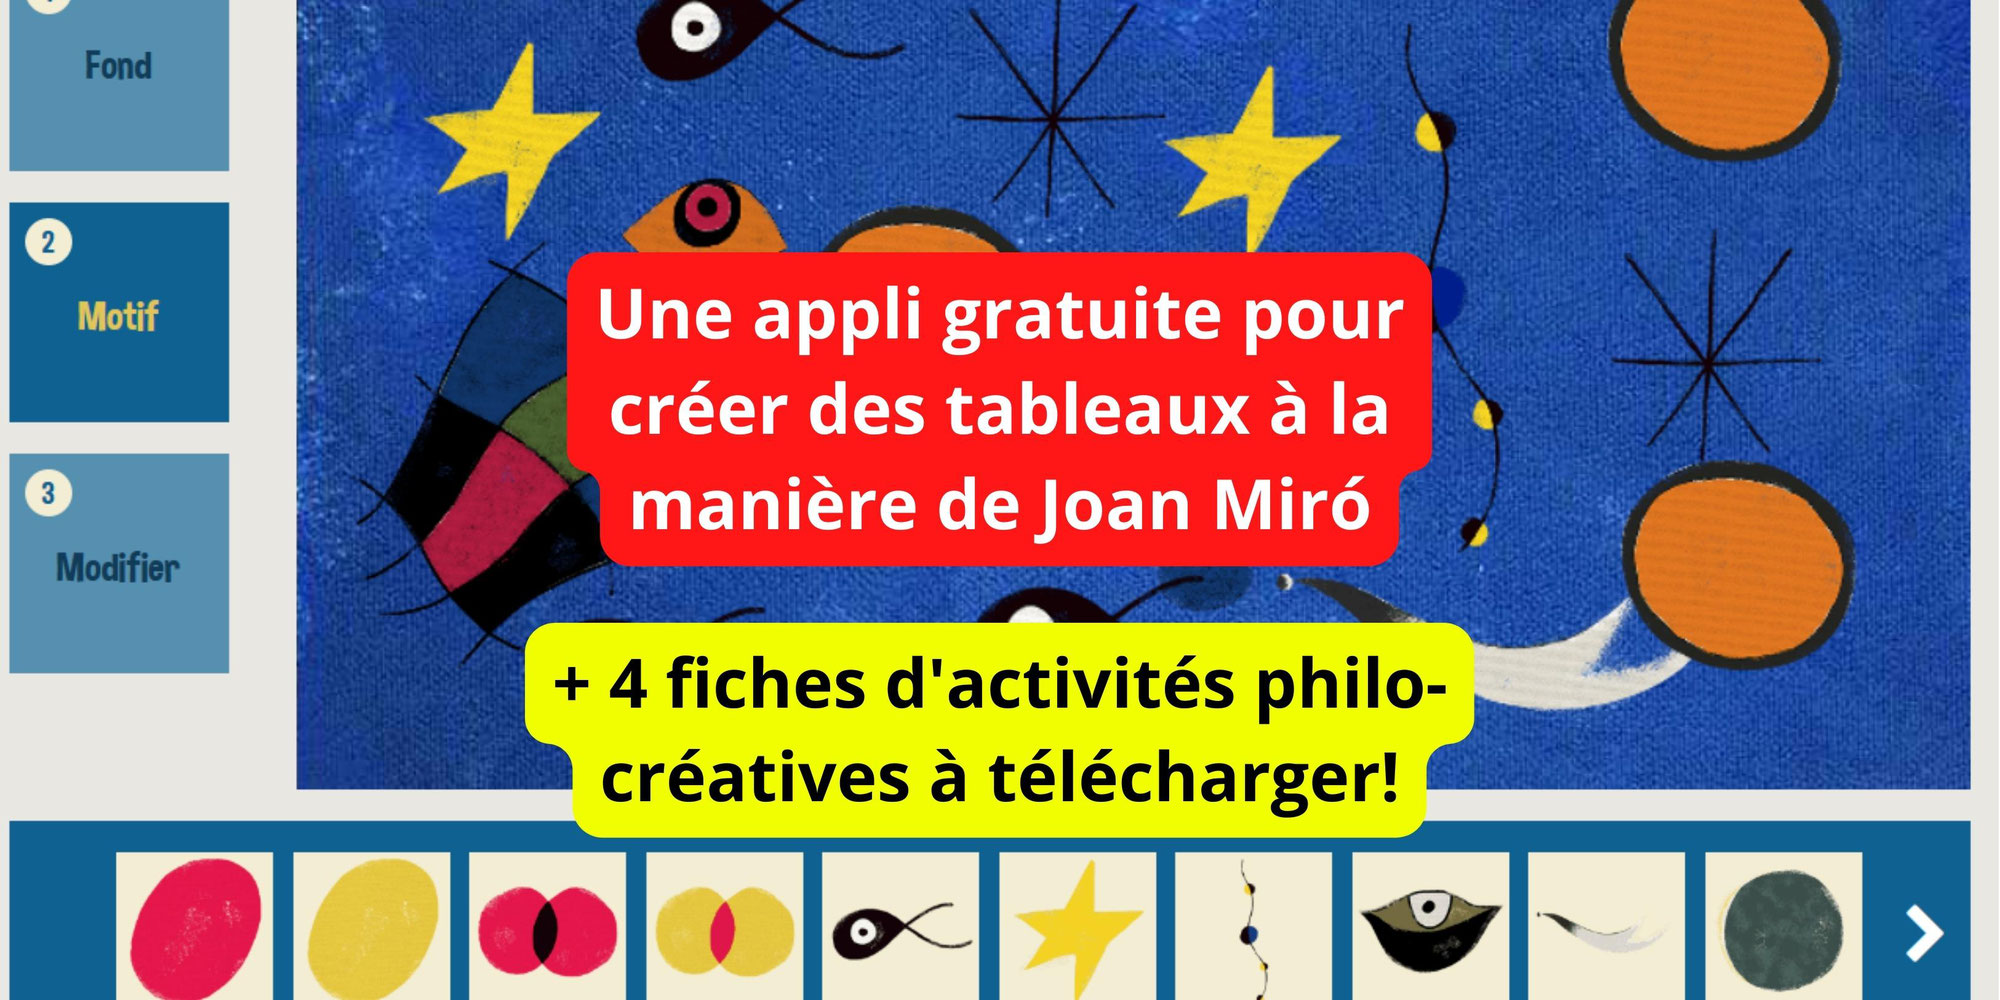 Une appli gratuite pour créer des tableaux à la manière de Joan Miró + 4 fiches d'activités philo-créatives pour réfléchir en créant!